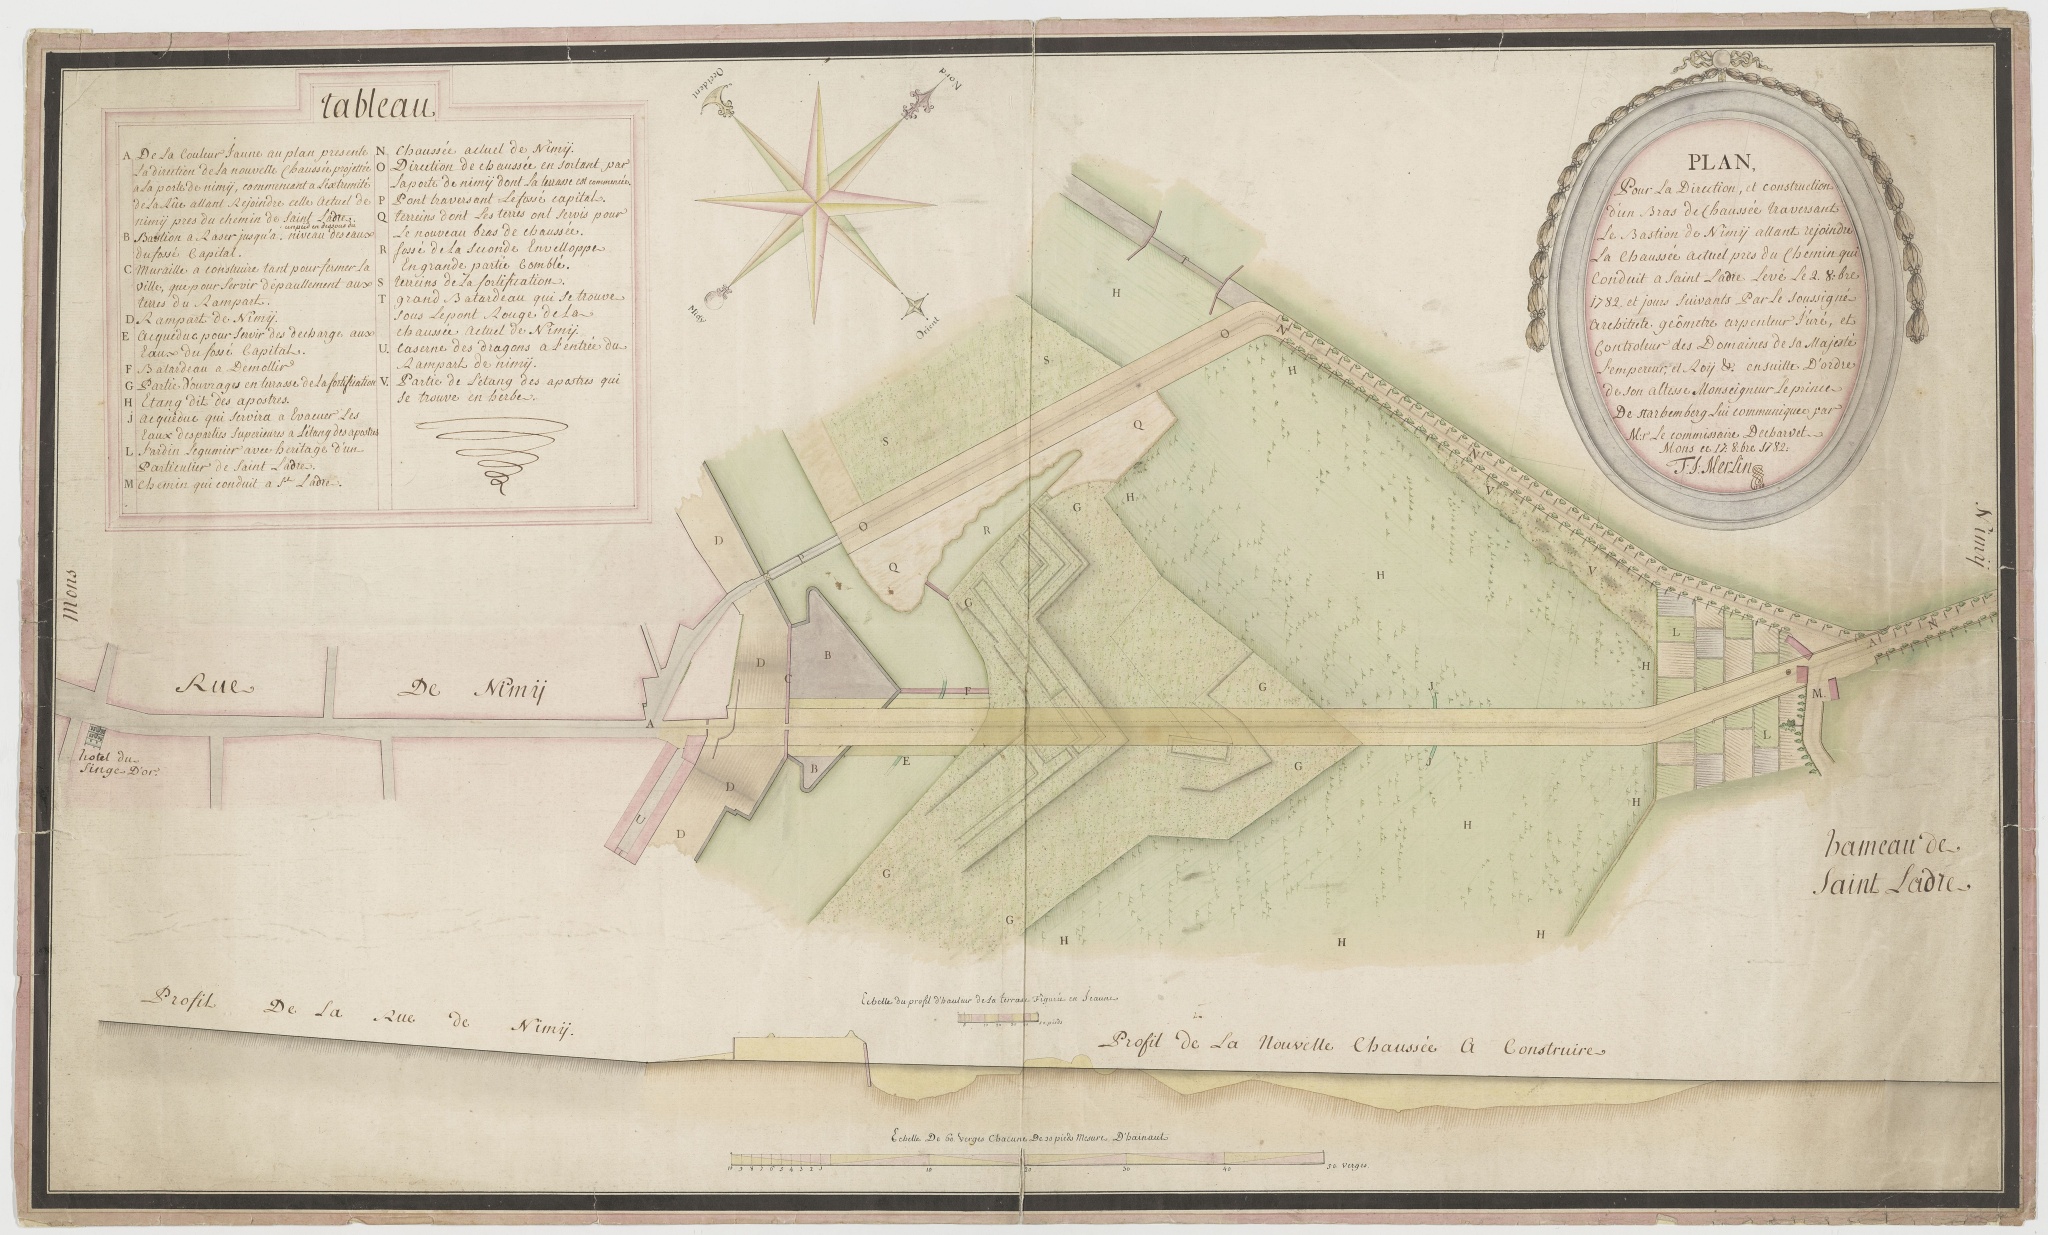 Plan pour la direction et construction d'un bras de chaussée traversant le bastion de Nimy… levé le 2 octobre 1782 et jours suivants par le soussigné architecte géomètre arpenteur… T. J. Merlin